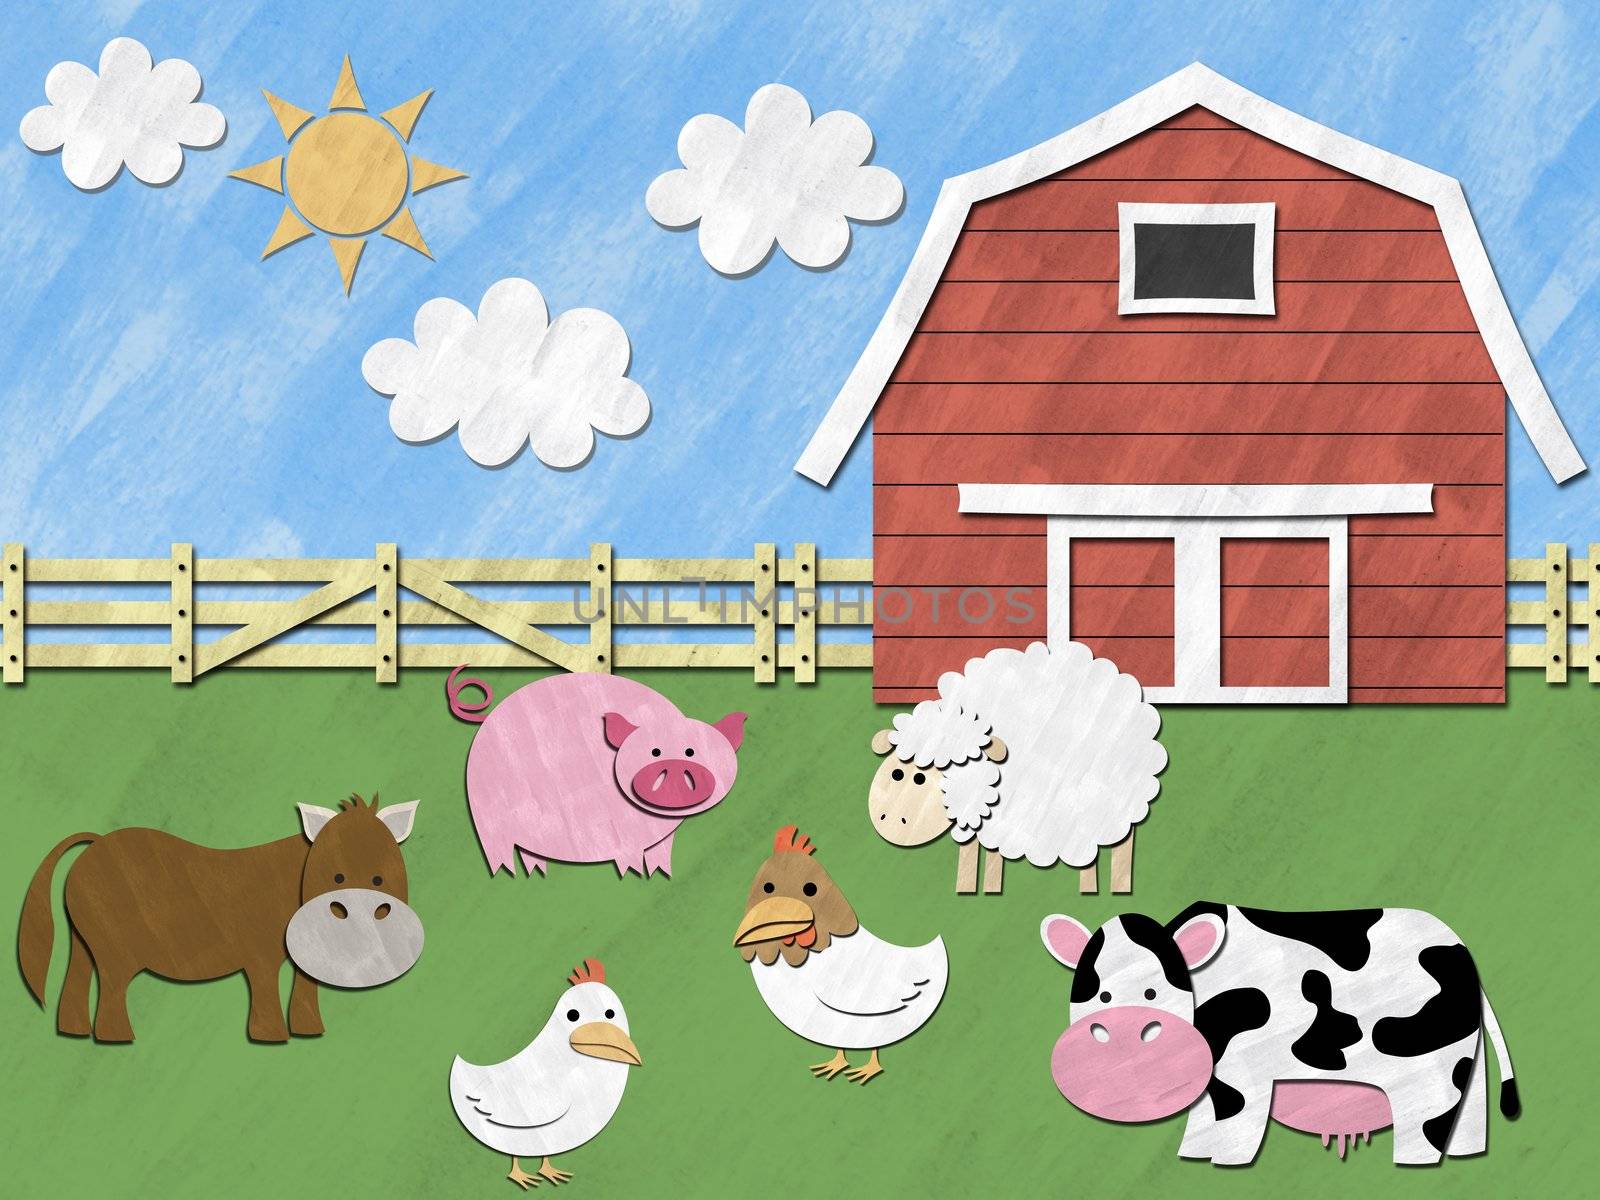 Farm animals on sunny day by Falara